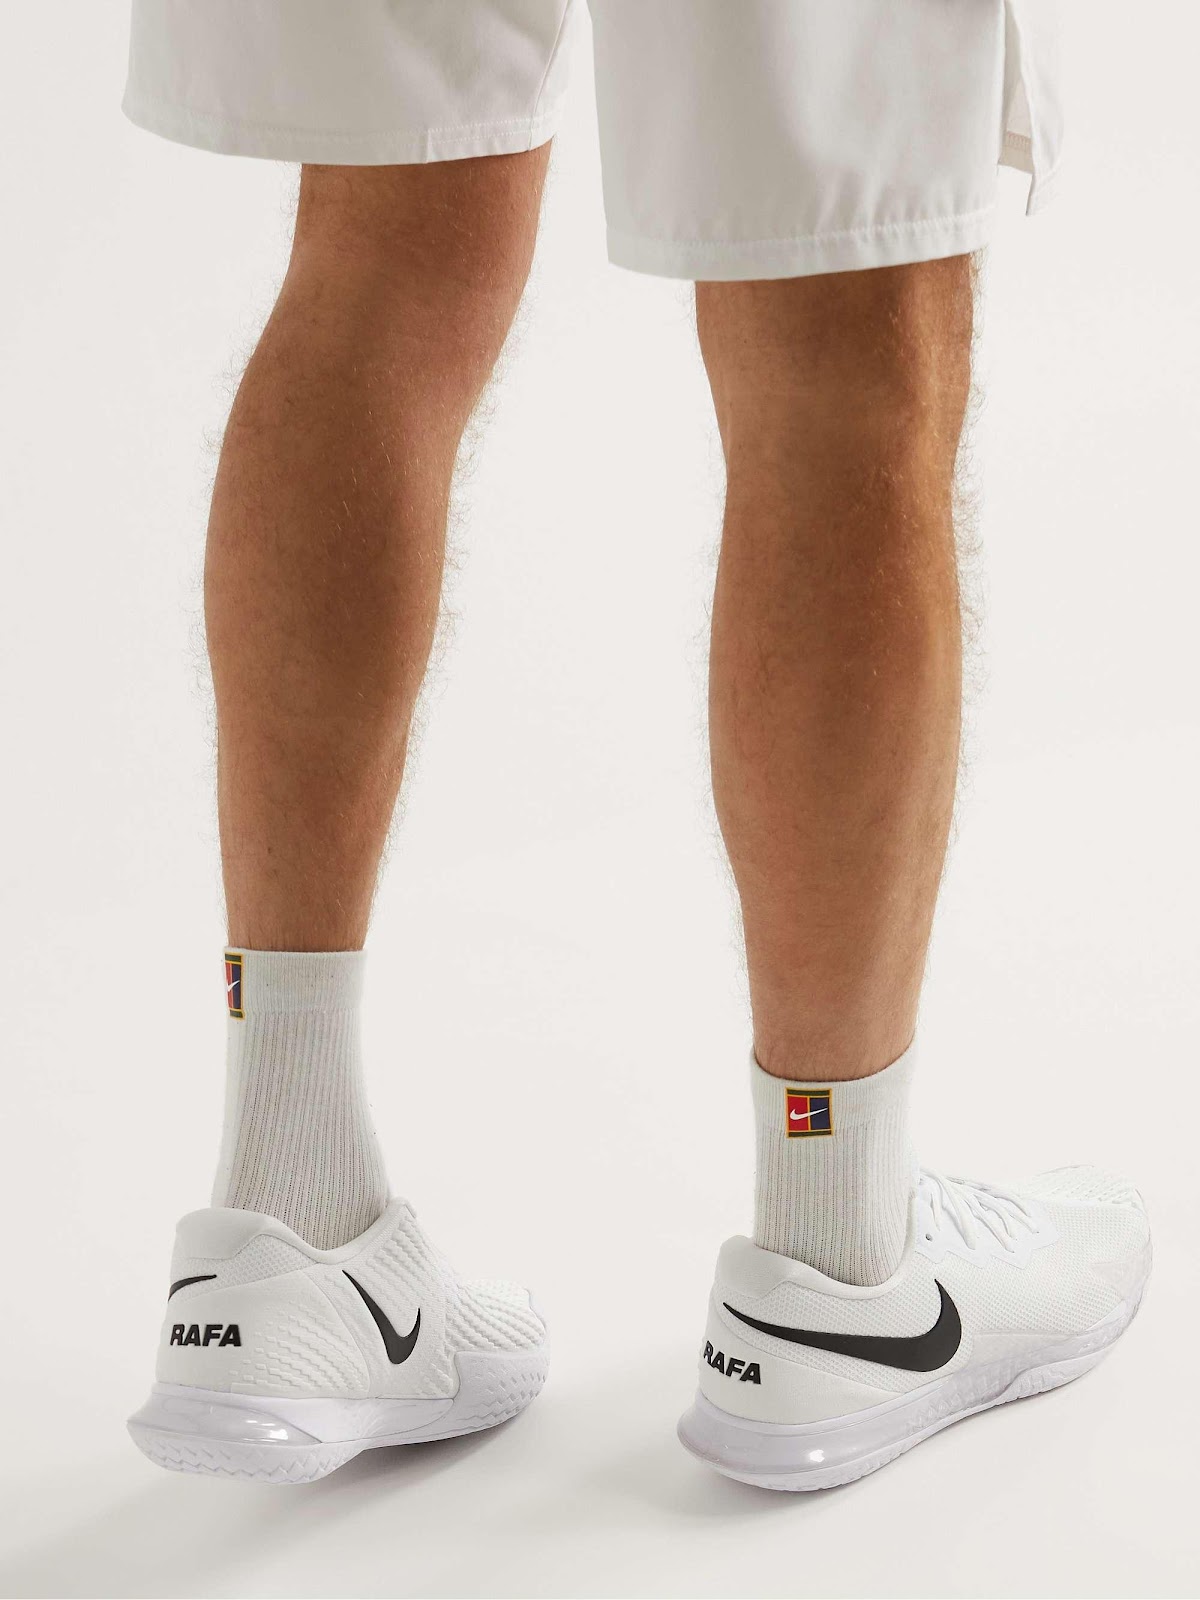  5 รองเท้าเทนนิส Nike คุณภาพที่มาพร้อมกับดีไซน์อันสวยงาม6